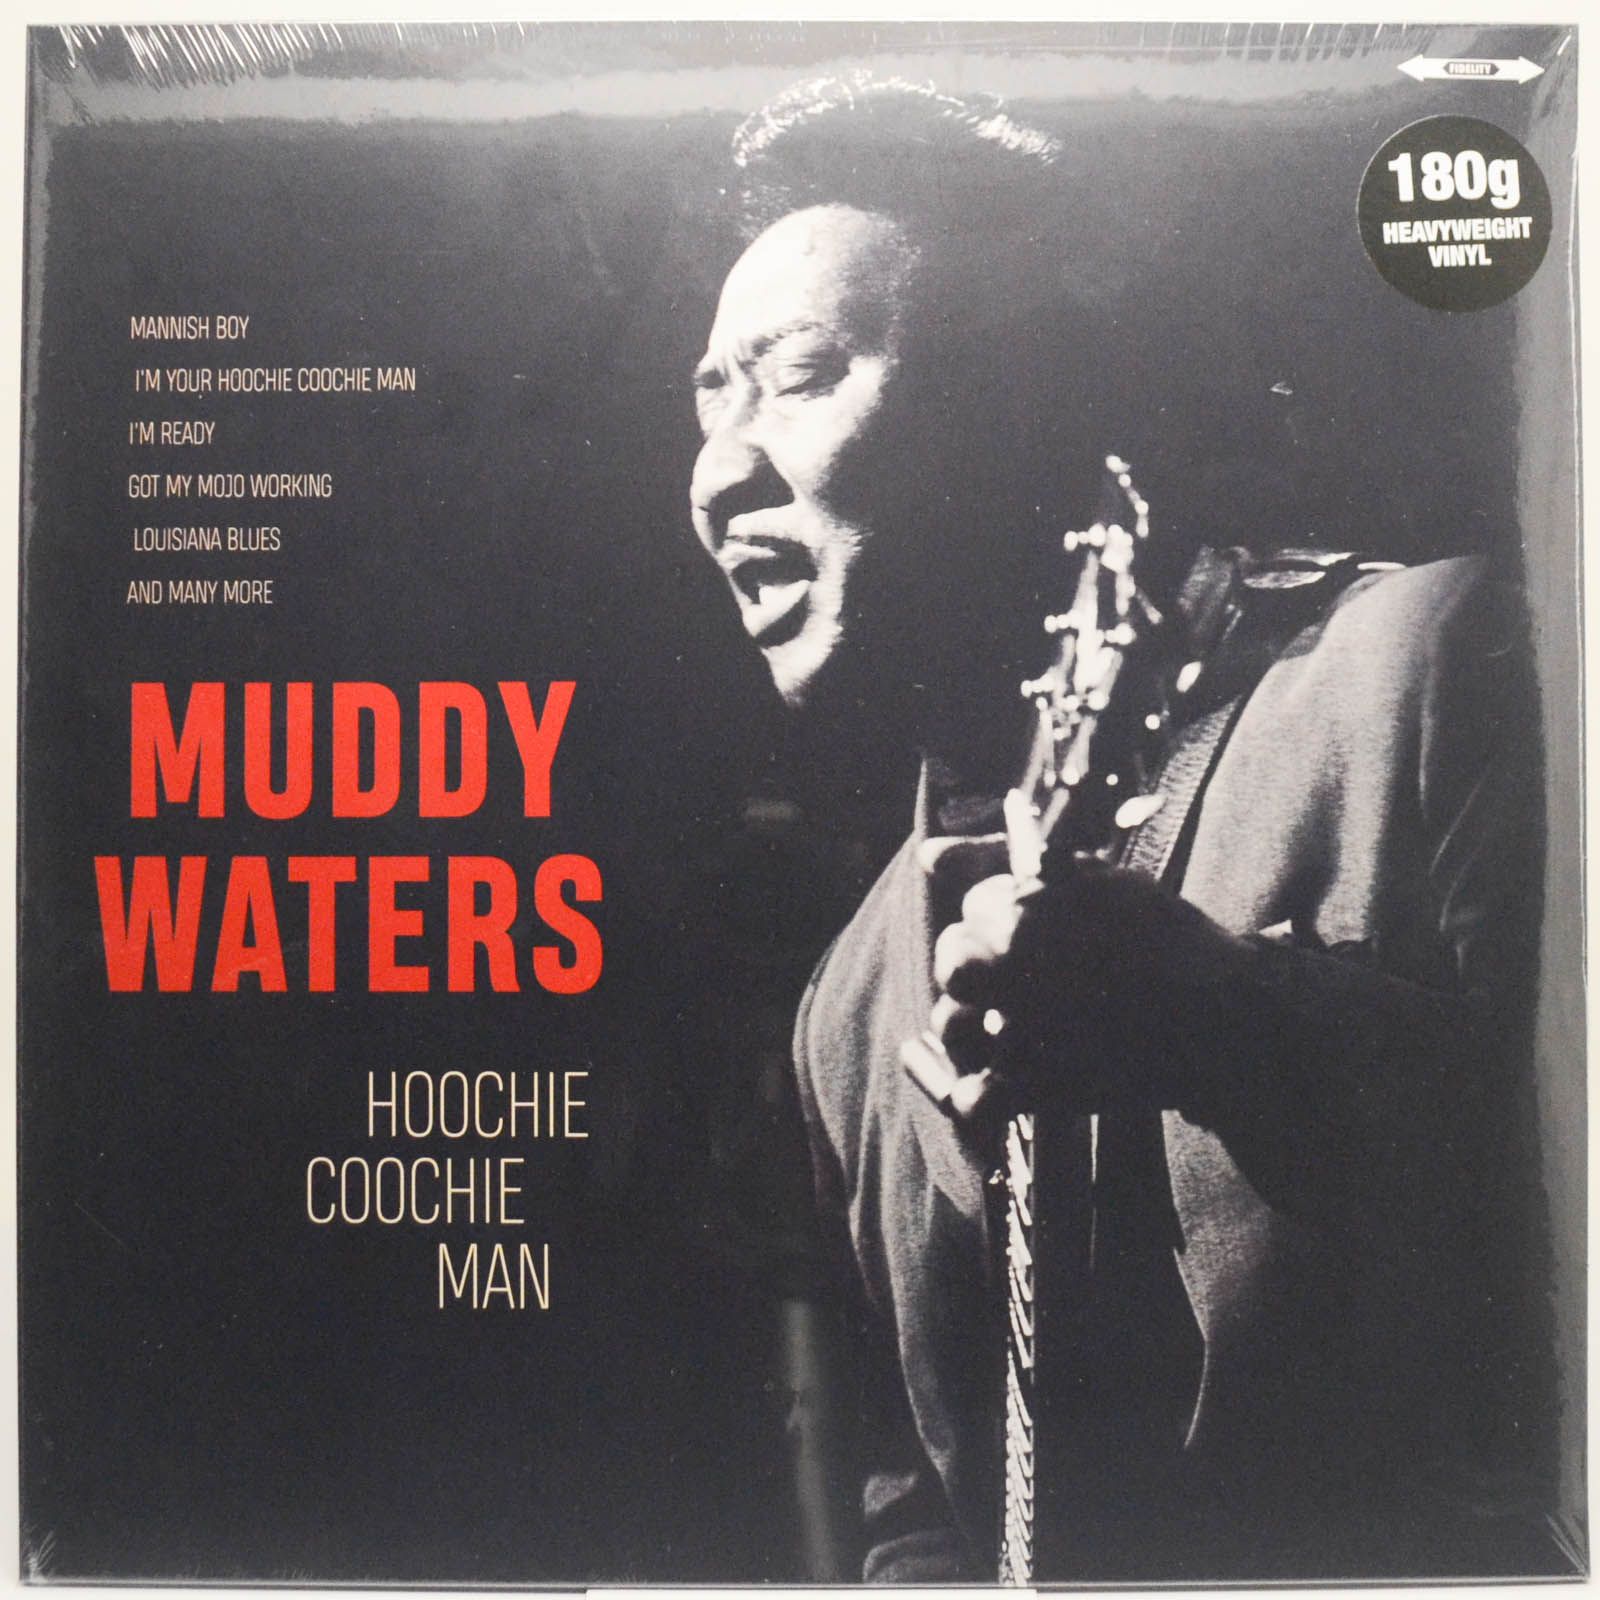 Muddy Waters — Hoochie Coochie Man, 2018